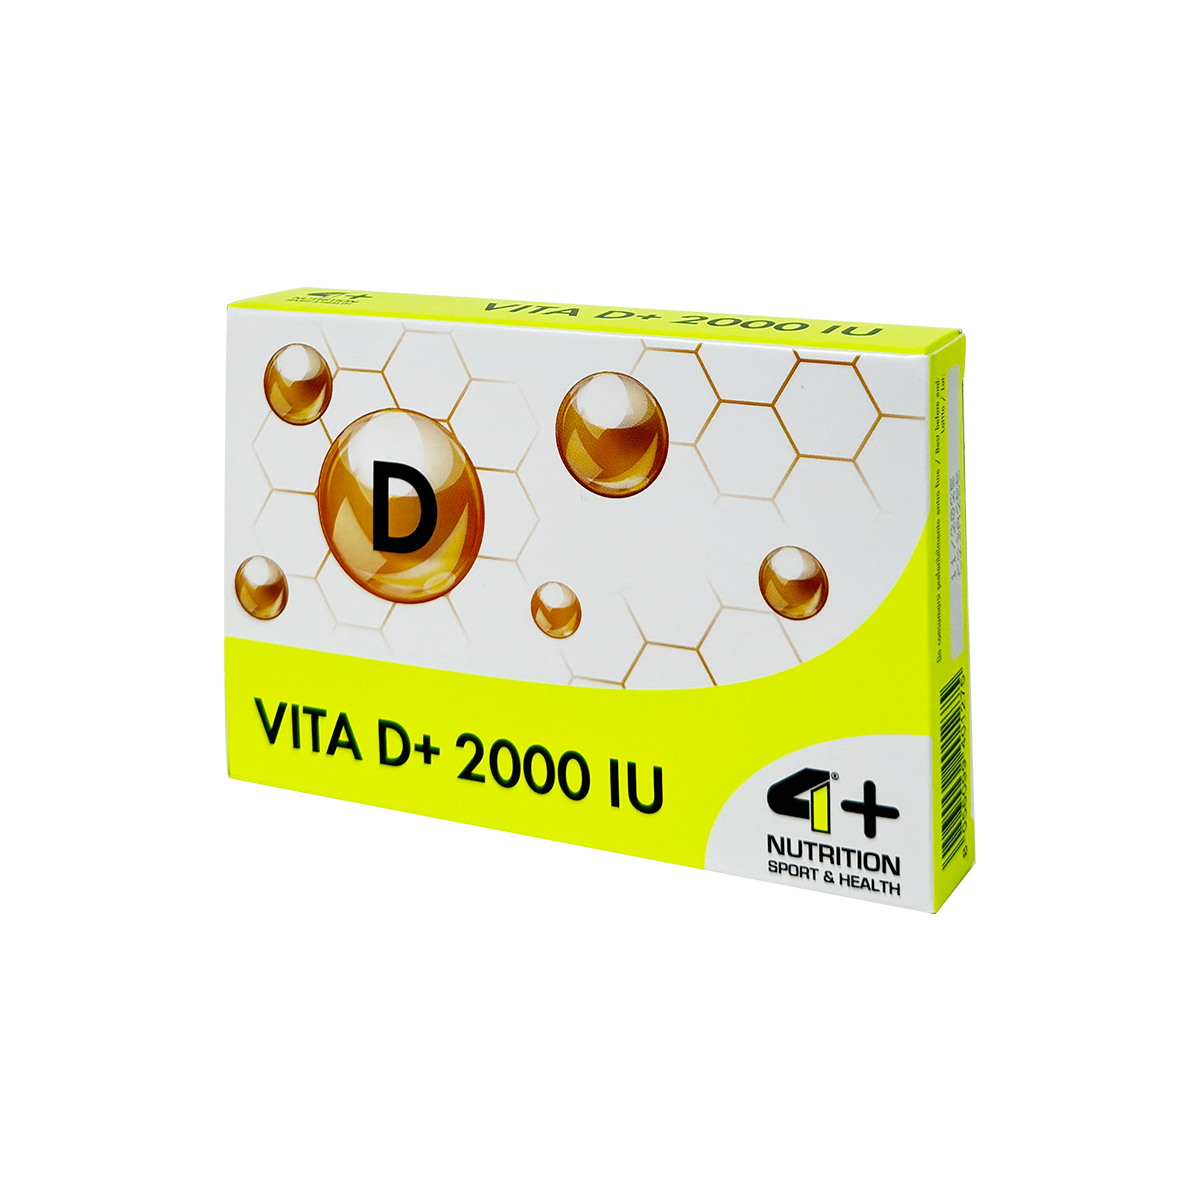 VITA D+ 2000 IU